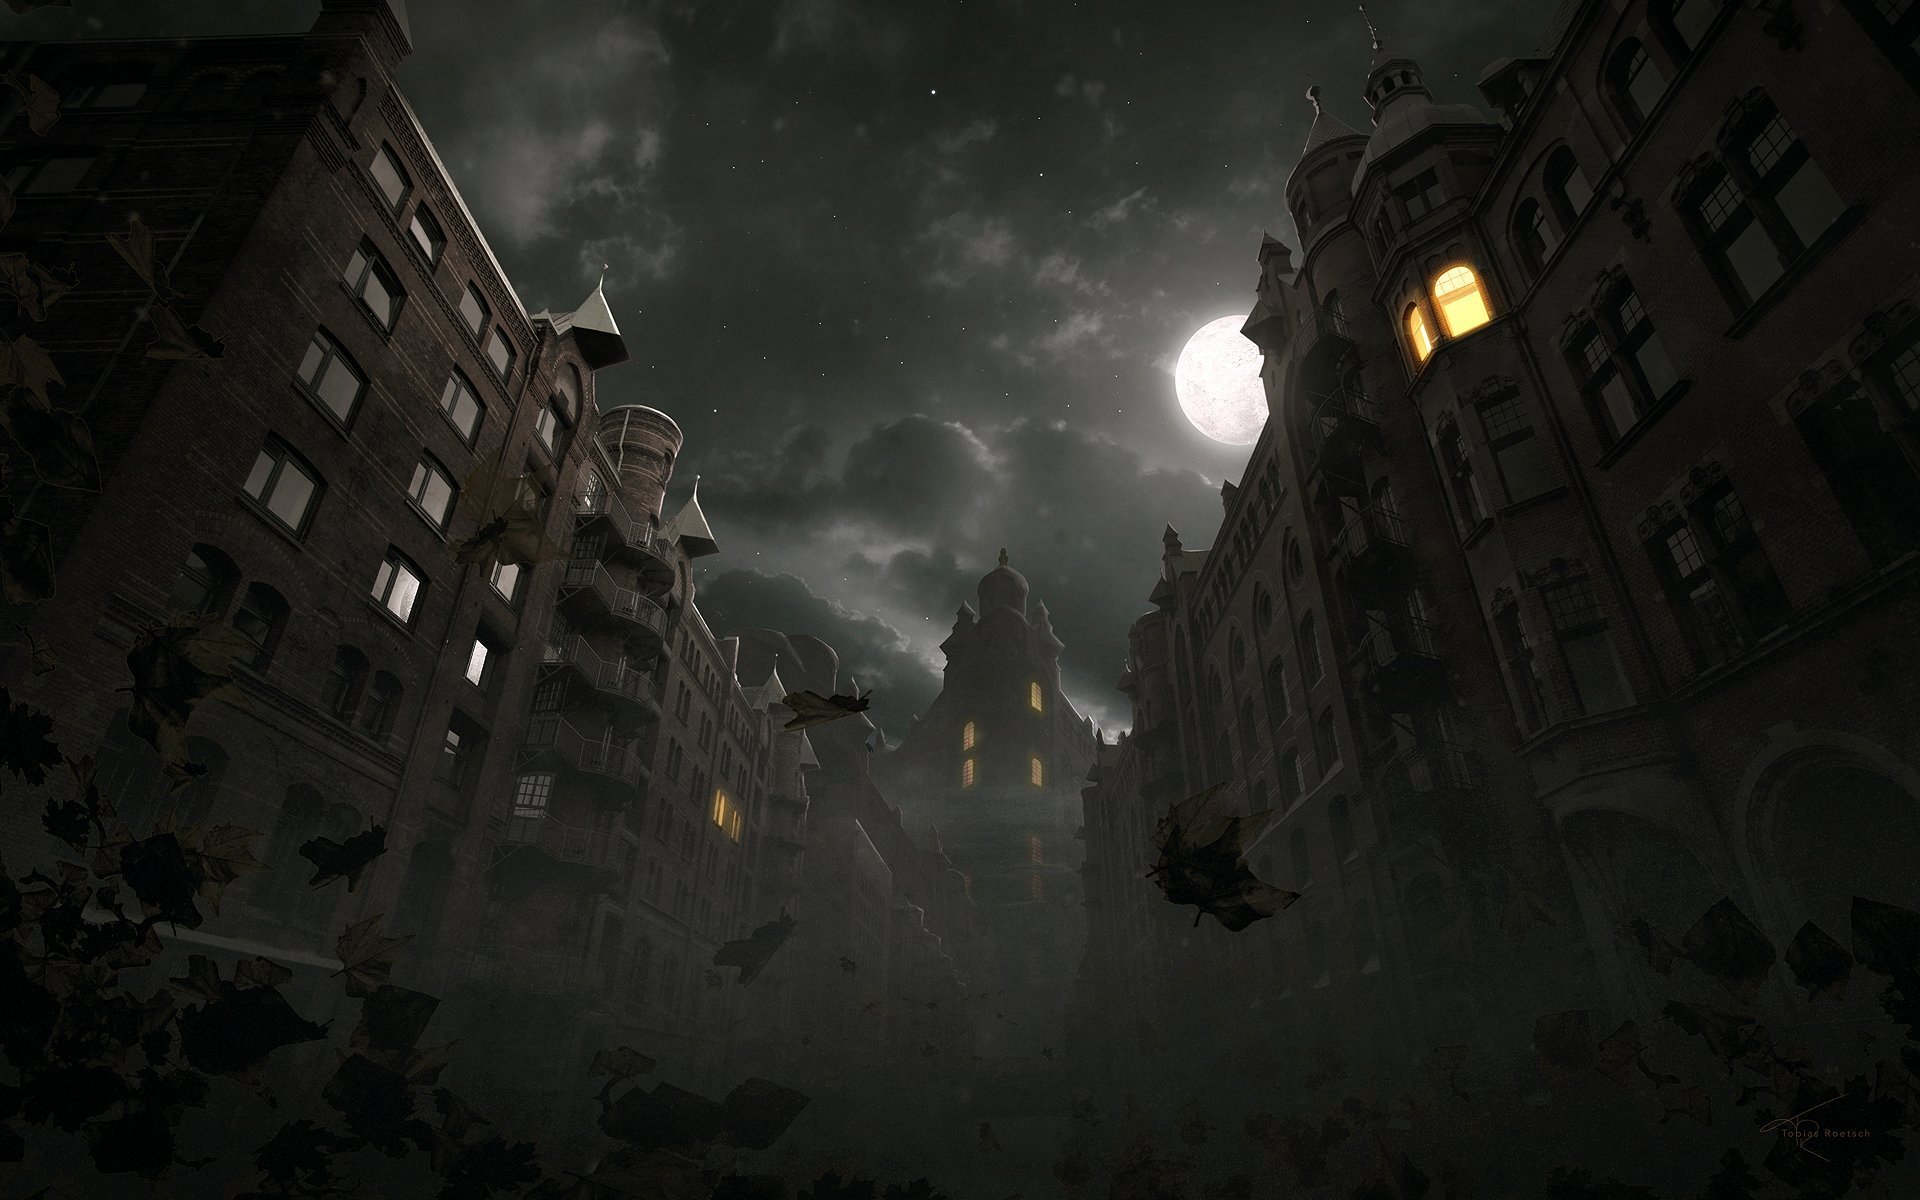 دانلود تصویر بسیار جالب از شهر تاریک با خانه ها و ساختمان های قشنگ 